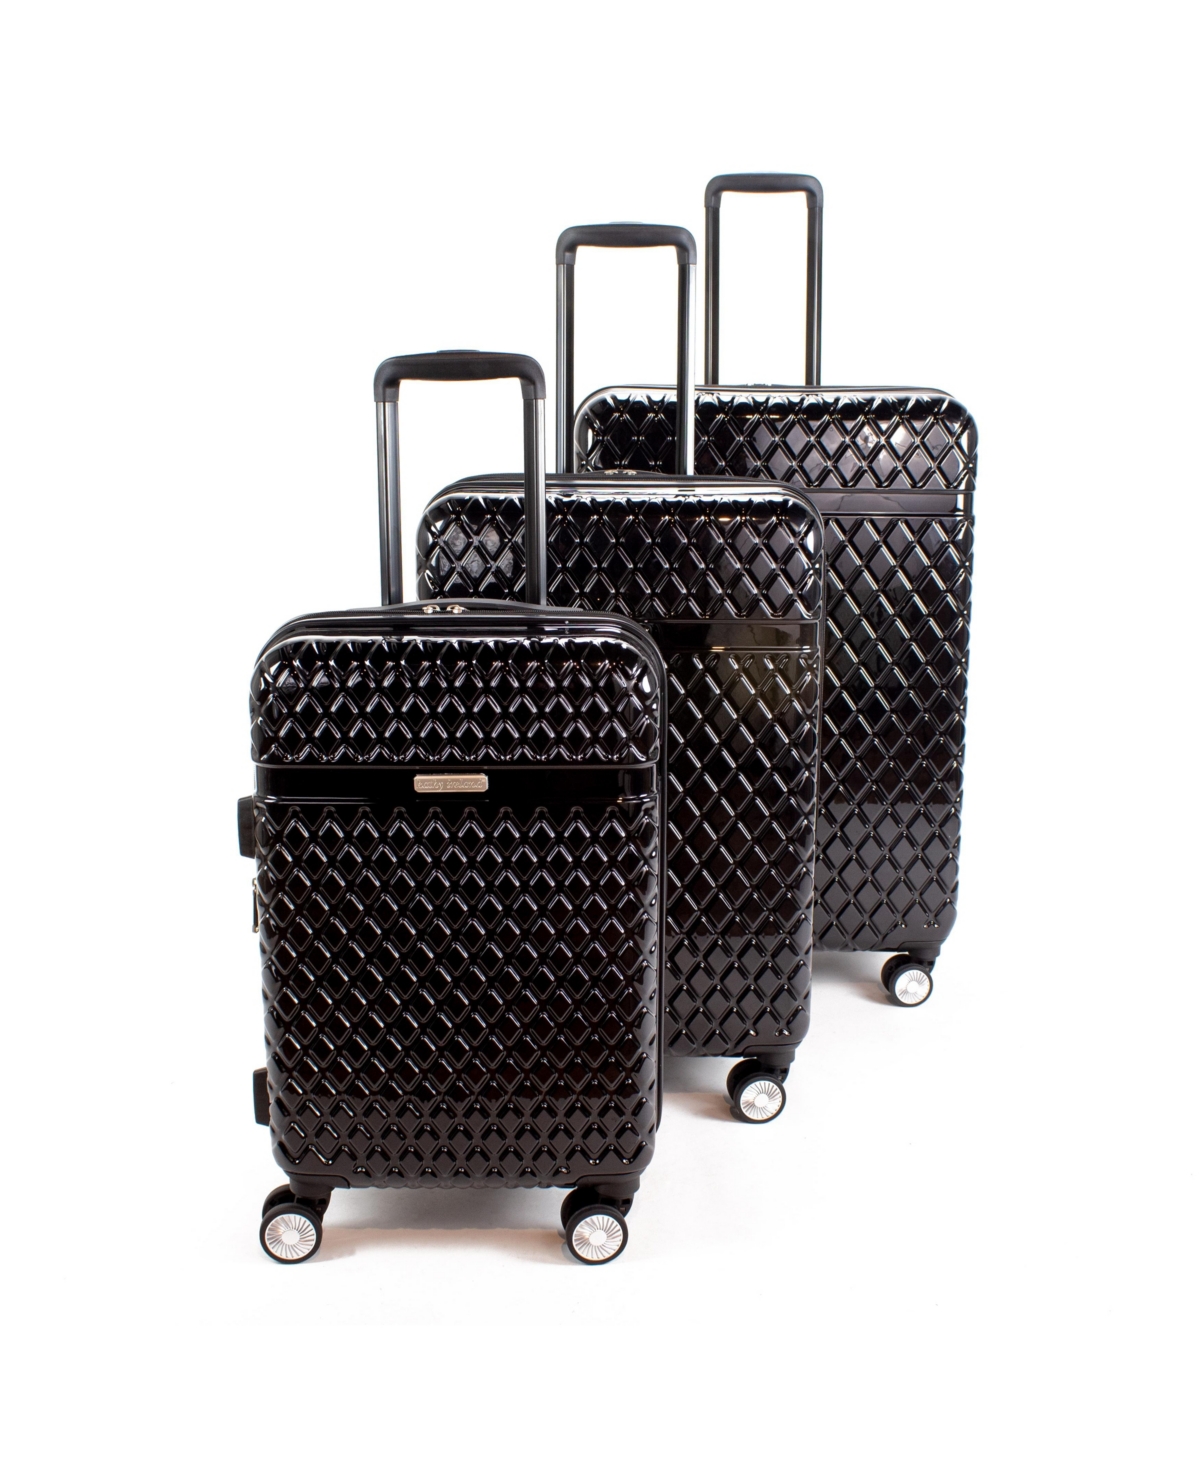 Kathy Ireland Yasmine 3-piece Hardside Luggage Set In Black